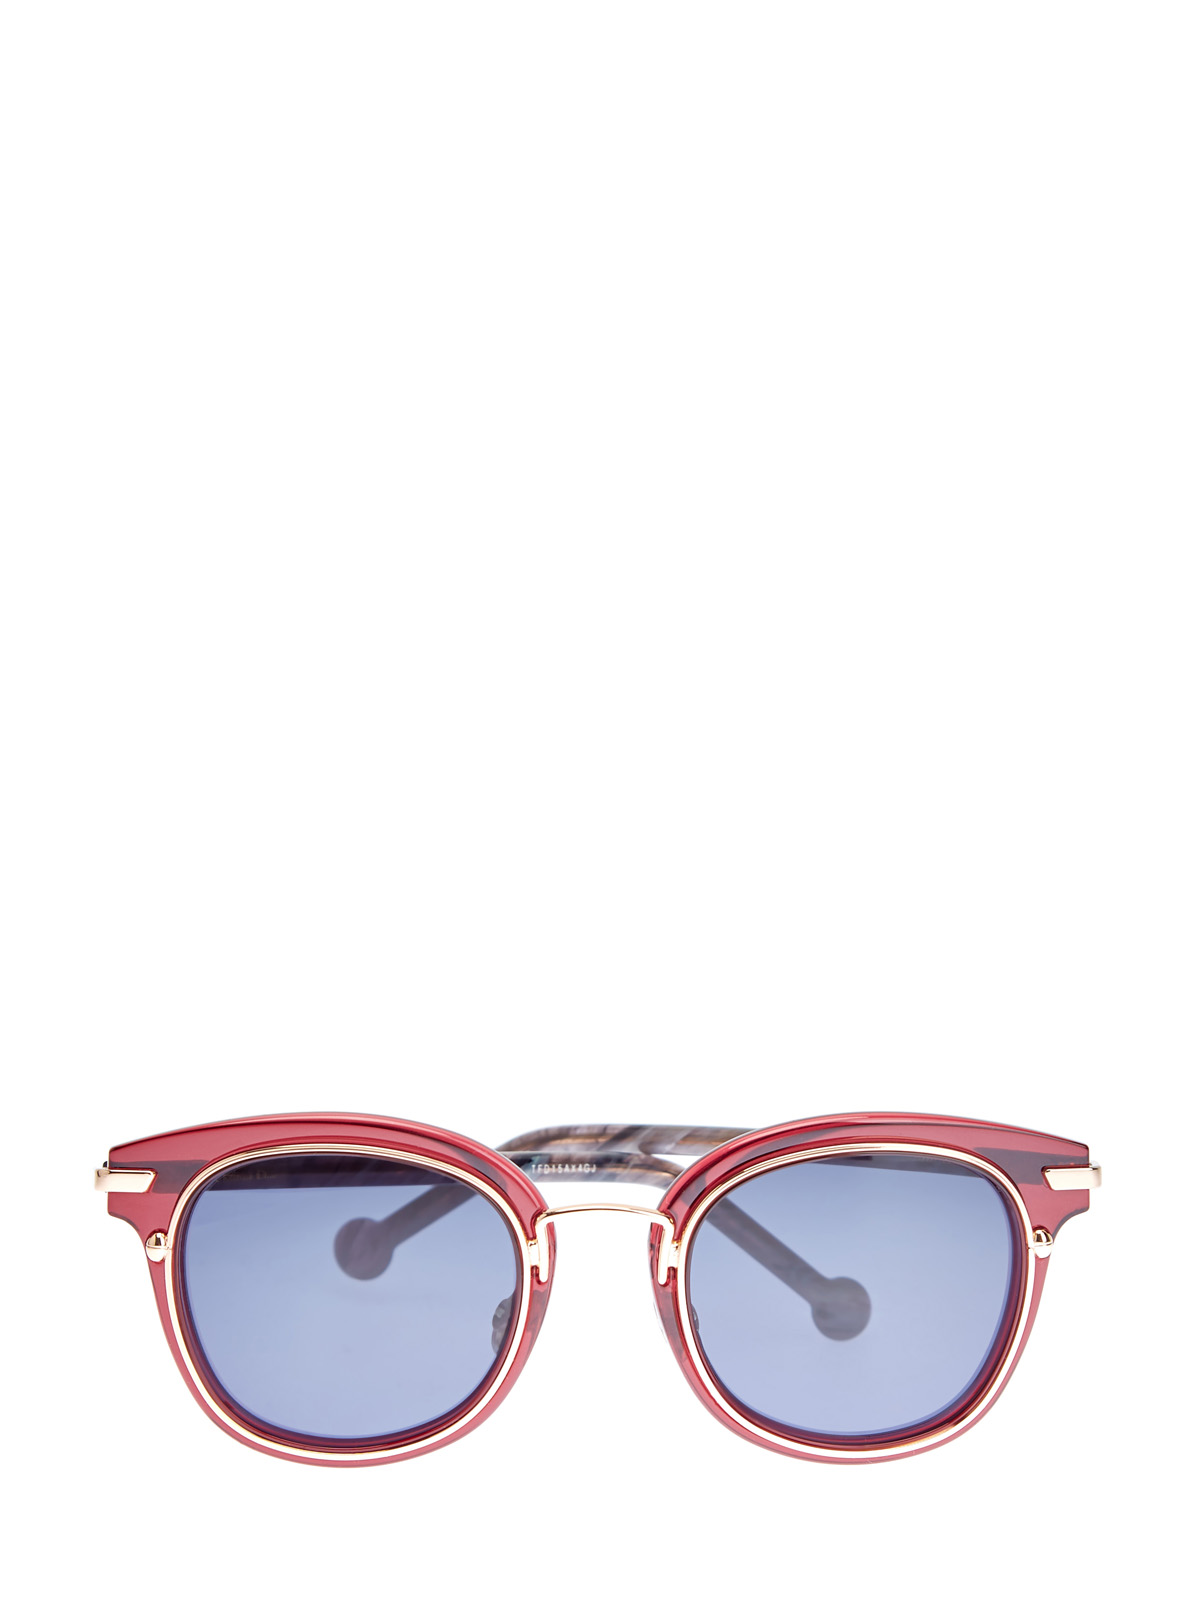 Солнцезащитные очки DiorOrigins2 в двойной оправе DIOR (sunglasses) women, цвет мульти, размер M;L;XL;2XL;3XL